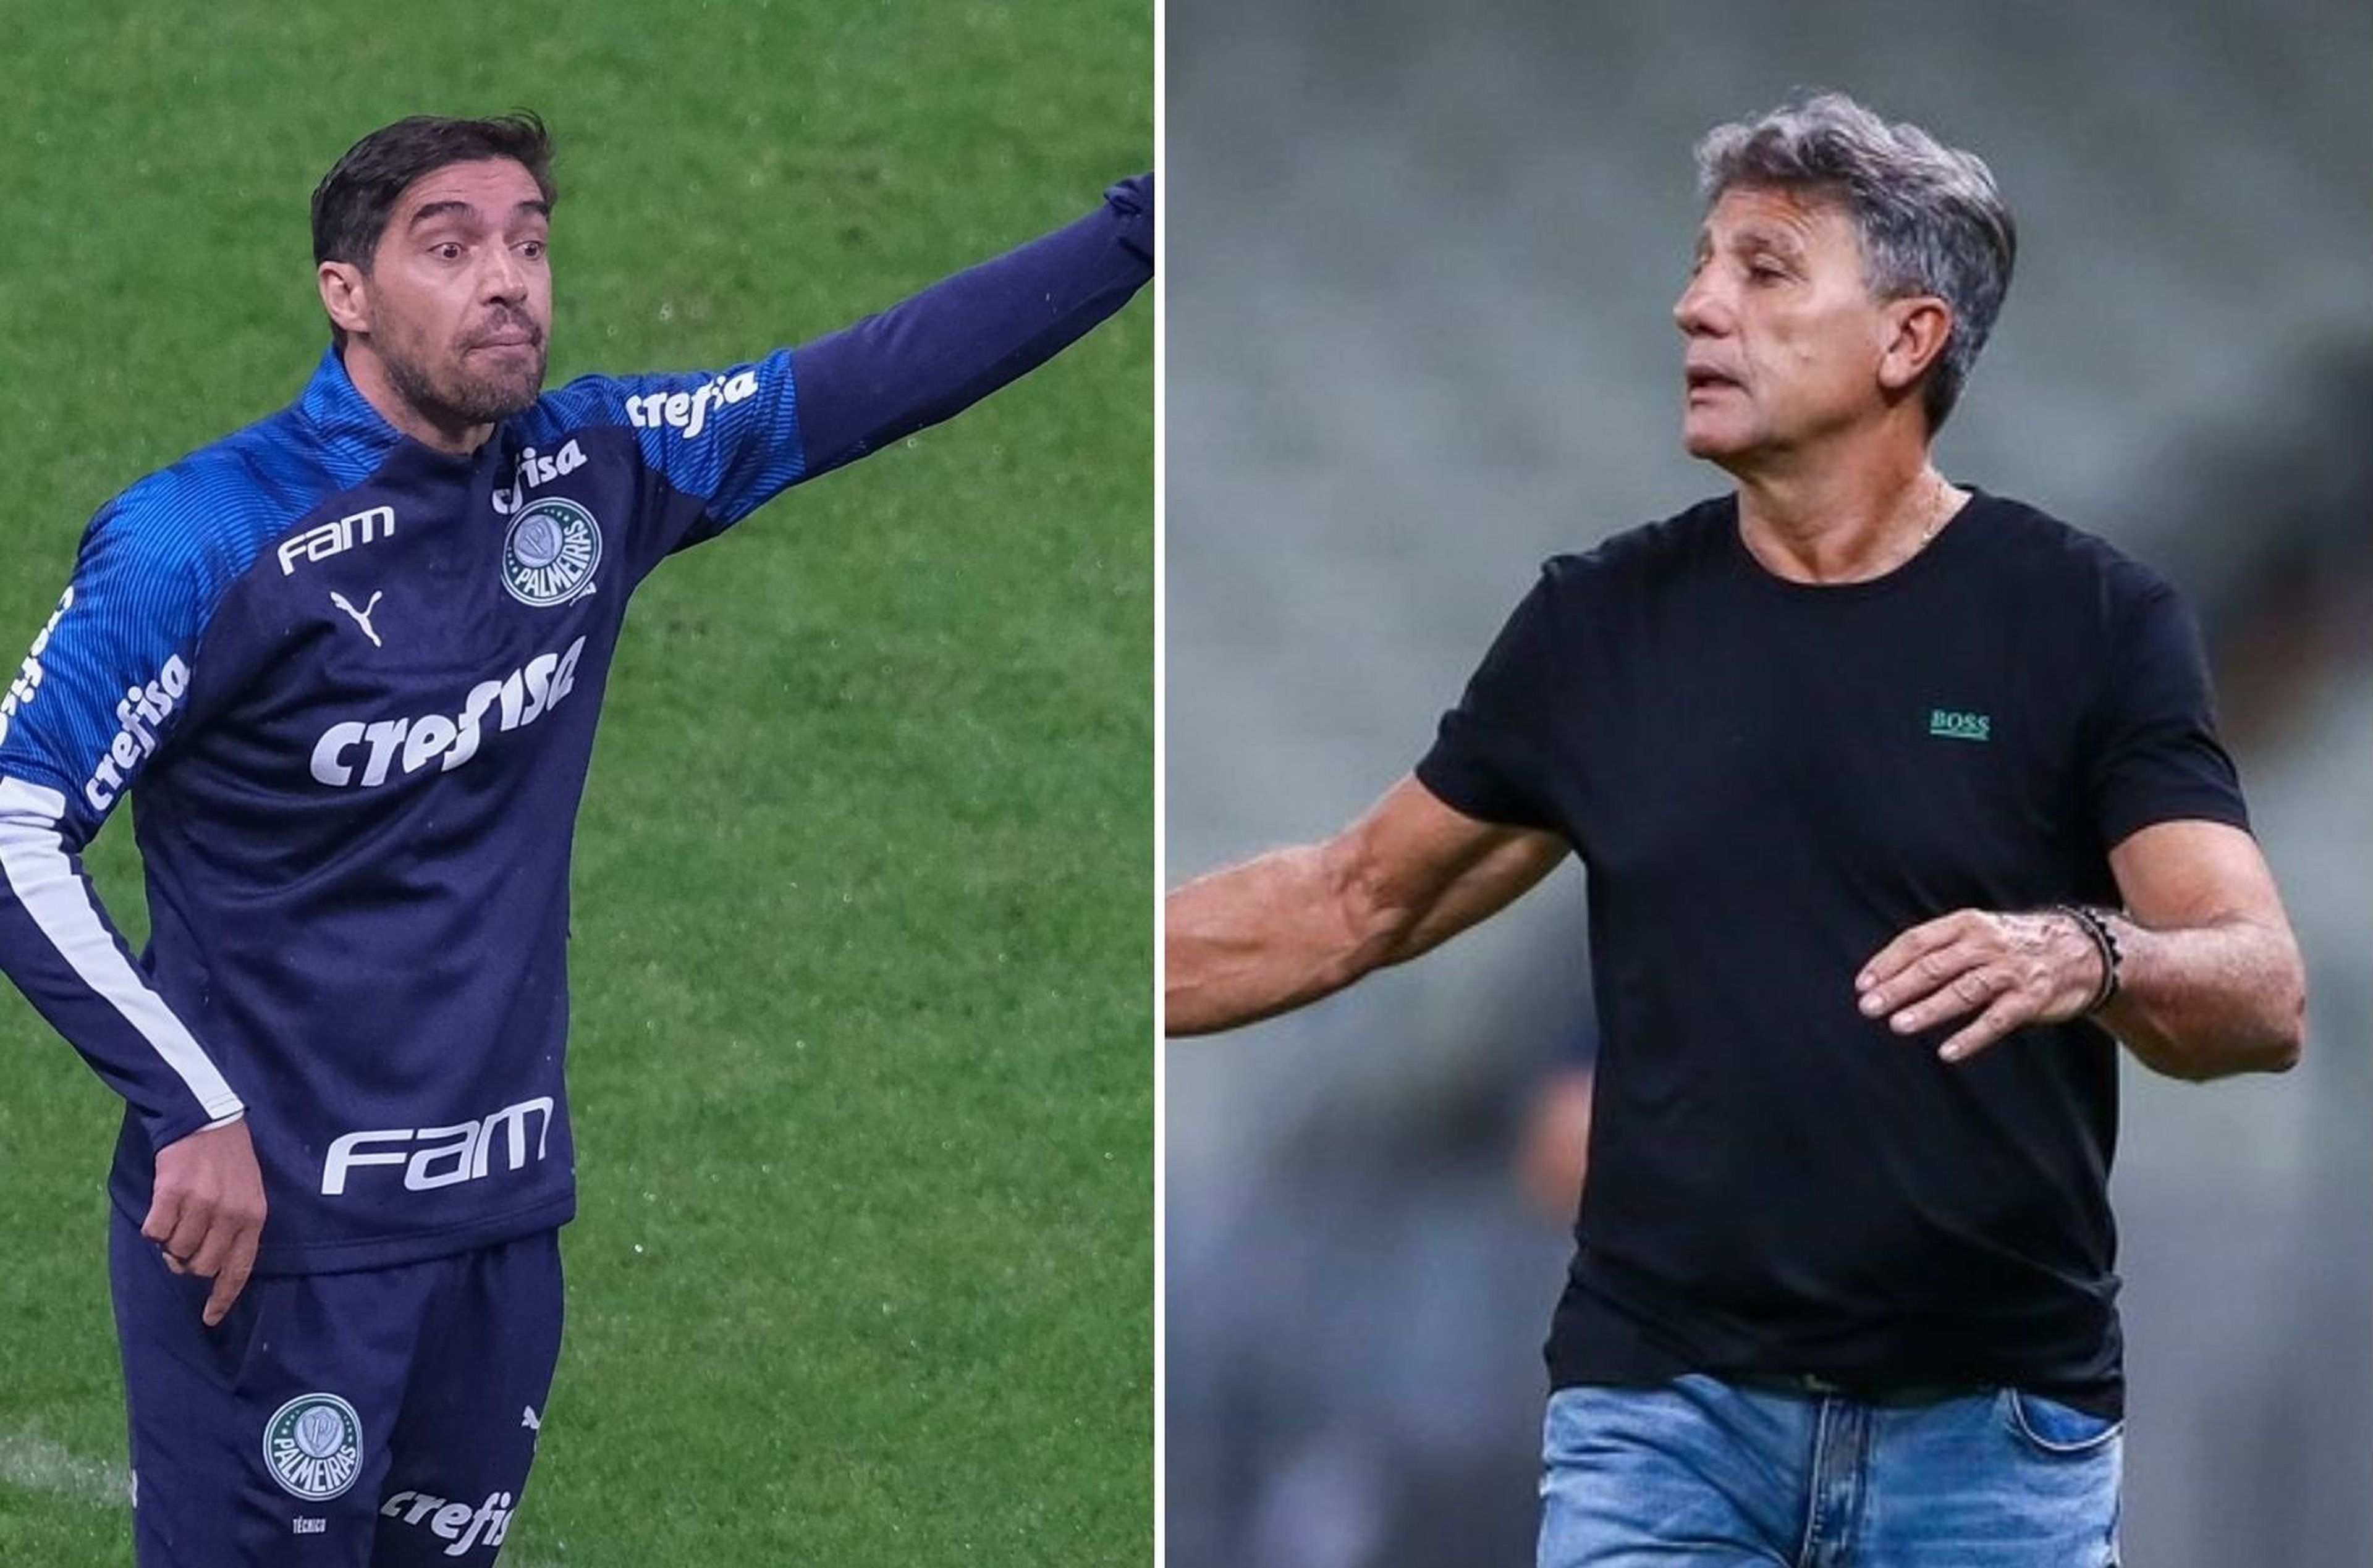 Marcelo Zambrana - Agência de Fotografia - Estadão Conteúdo/Lucas Uebel - Grêmio FBPA